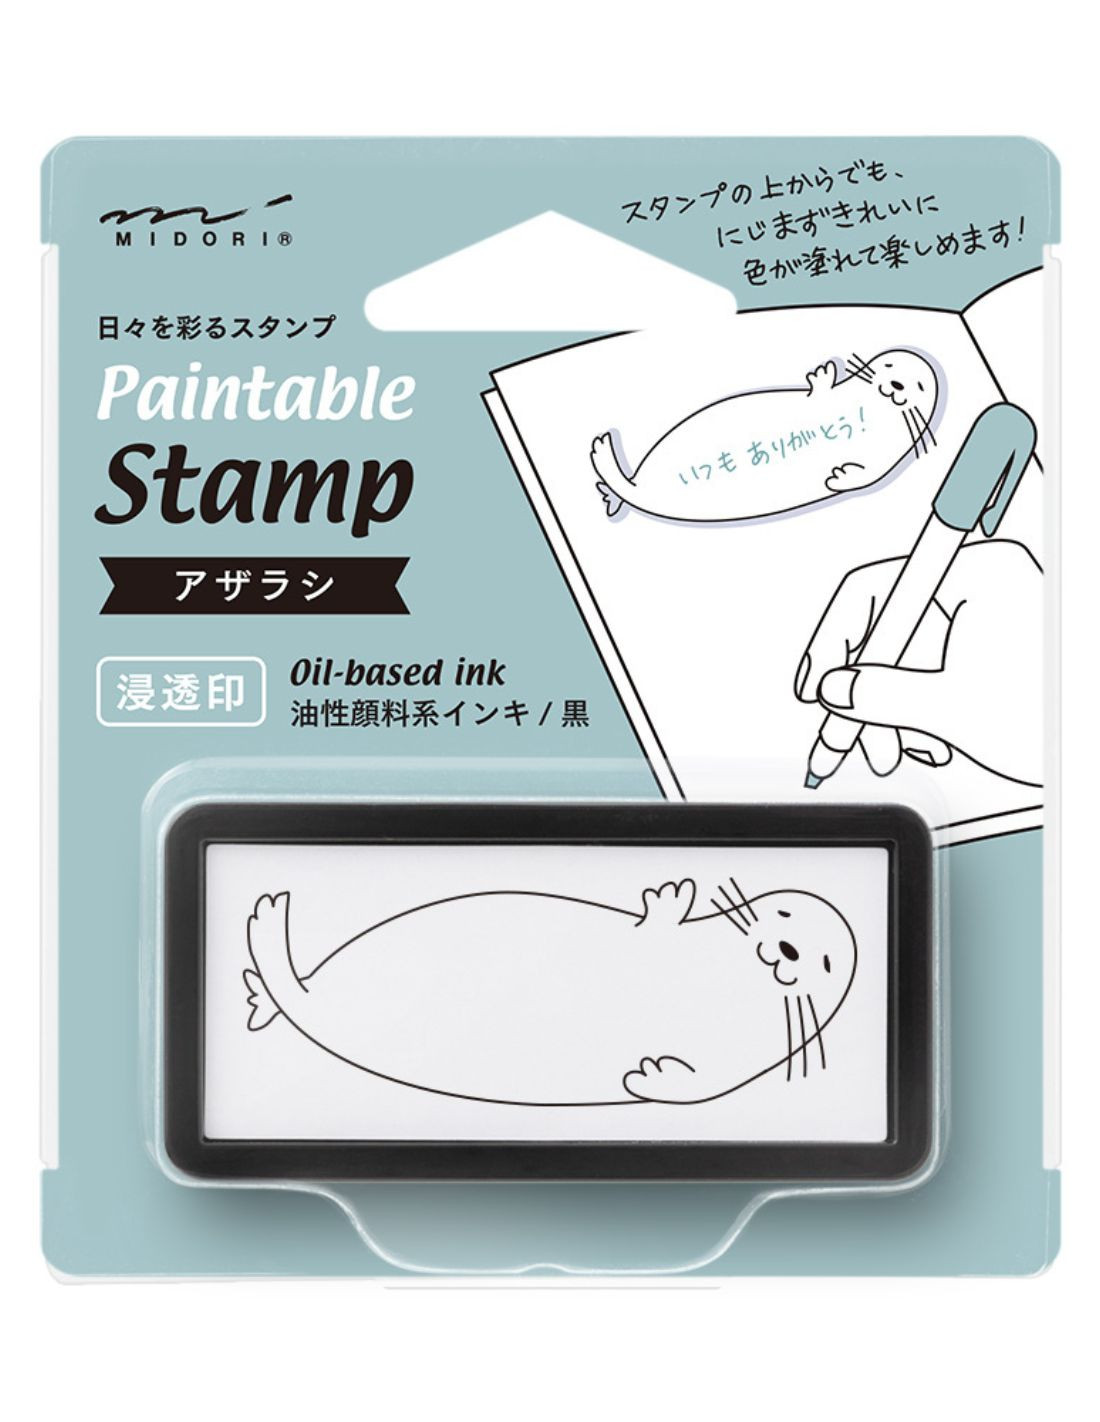 Tampon pré-encré Paintable Stamp - Phoque - Midori